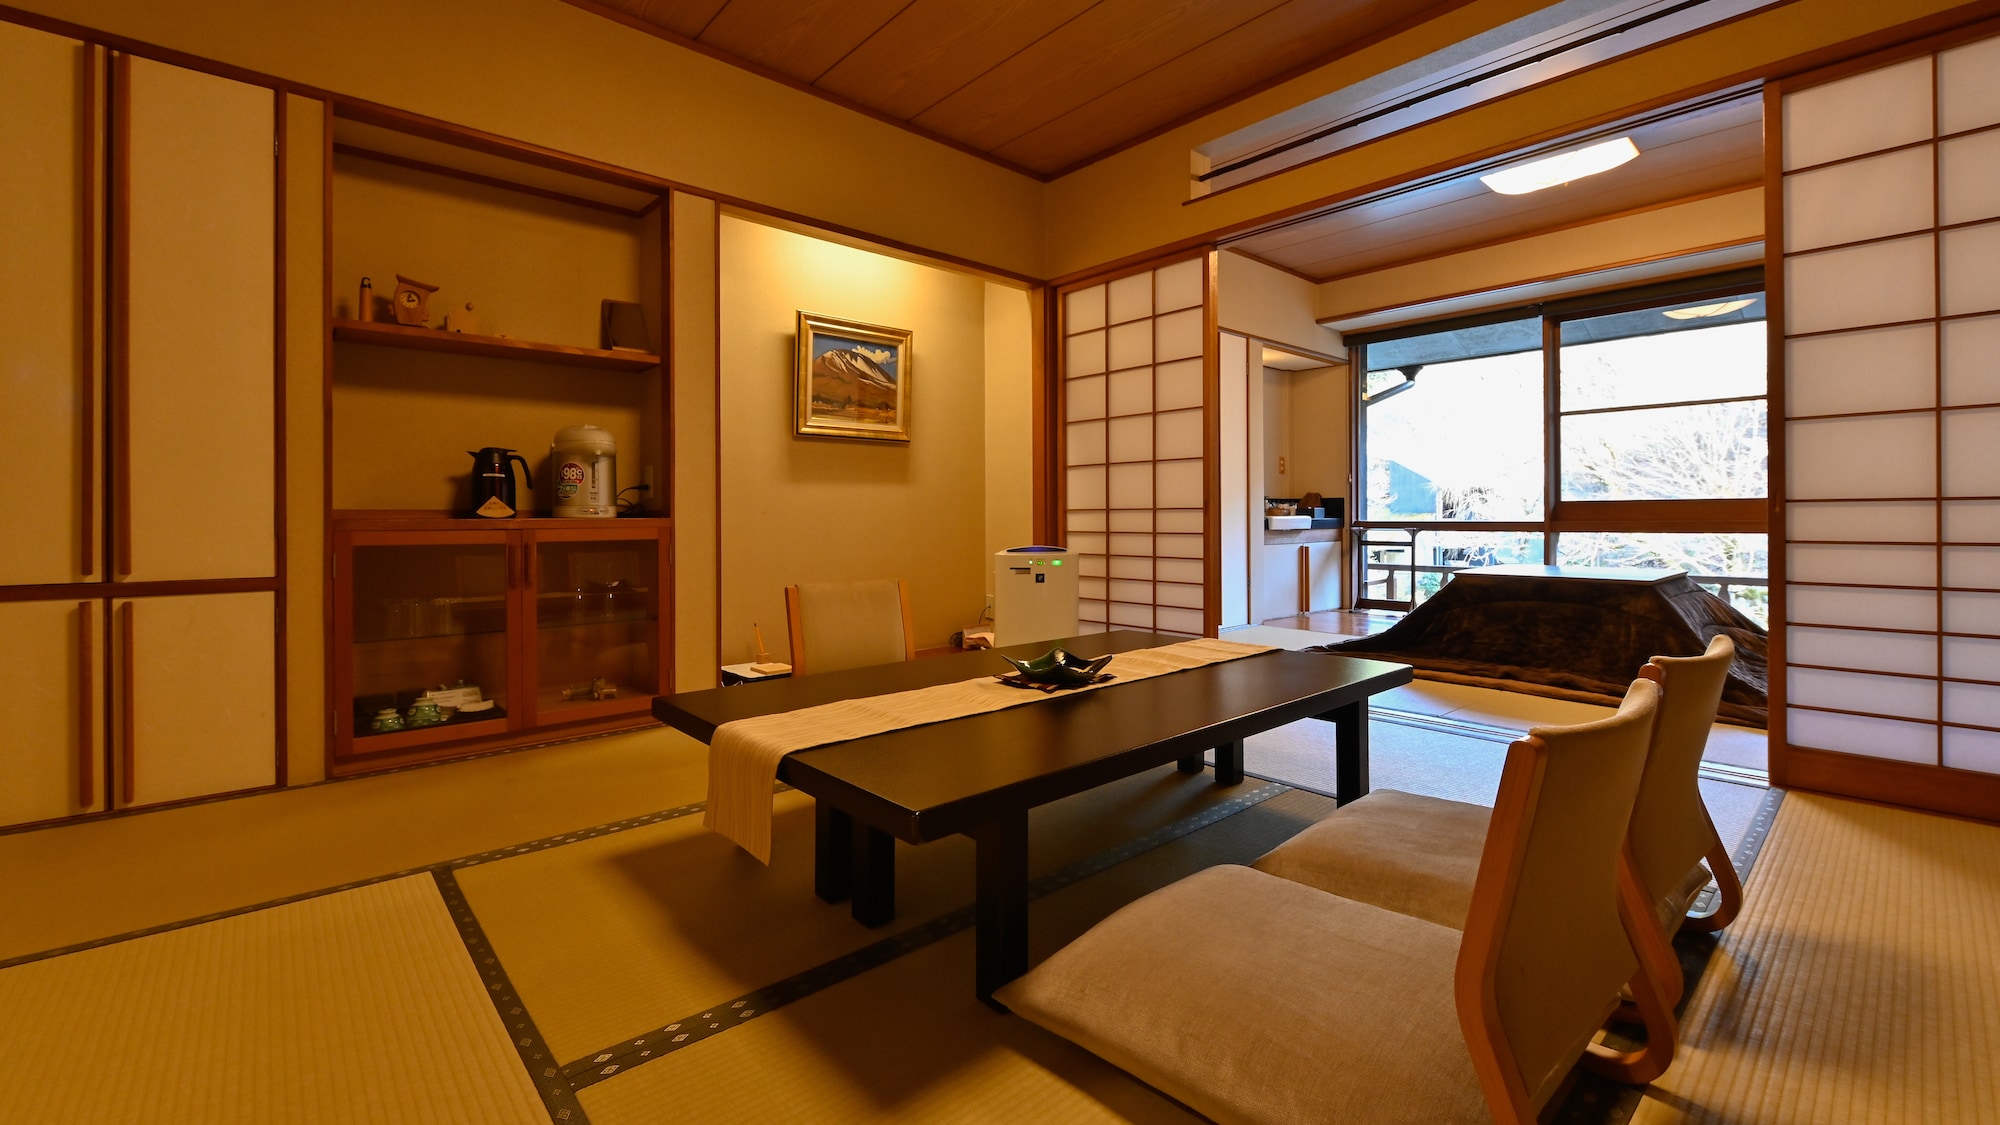 【청풍관 일본식 방의 일례】나무의 온기와 레트로의 정취가 인기의 방입니다.